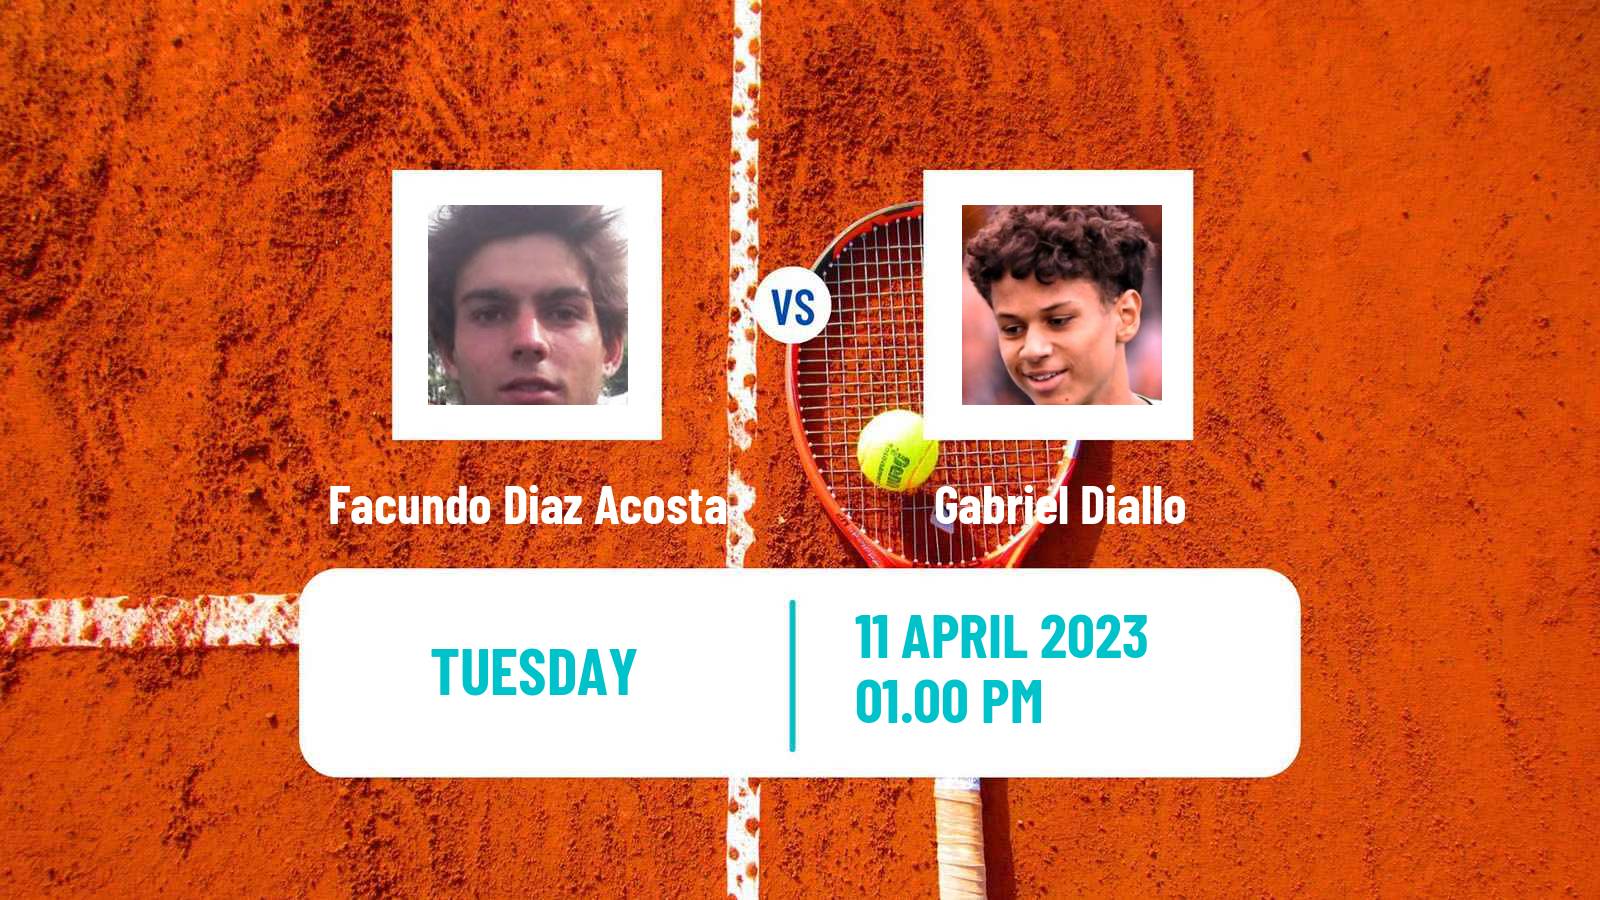 Tennis ATP Challenger Facundo Diaz Acosta - Gabriel Diallo